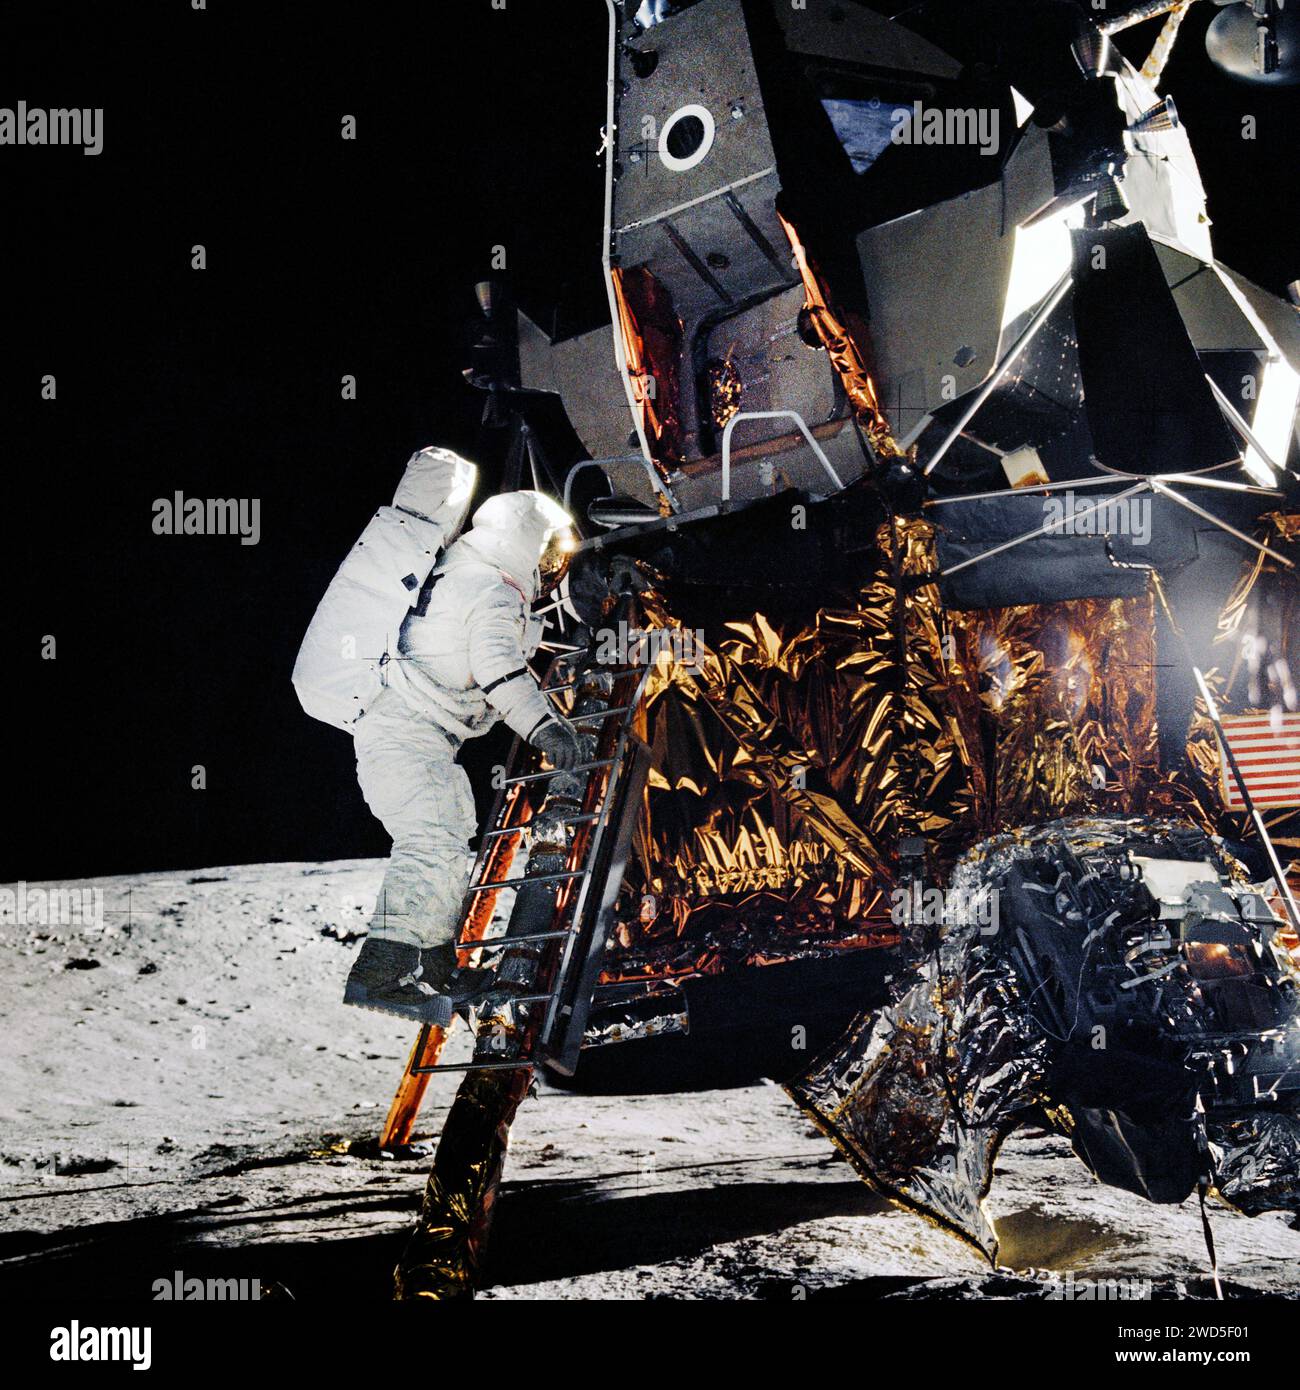 L'astronauta americano Alan L. Bean scendendo i passi della scala del modulo lunare mentre si preparava a camminare sulla luna per unirsi all'astronauta Charles Conrad Jr., comandante della missione, durante l'attività extraveicolare dell'Apollo 12, fotografia scattata dall'astronauta Charles Conrad Jr., NASA, 19 novembre 1969 Foto Stock